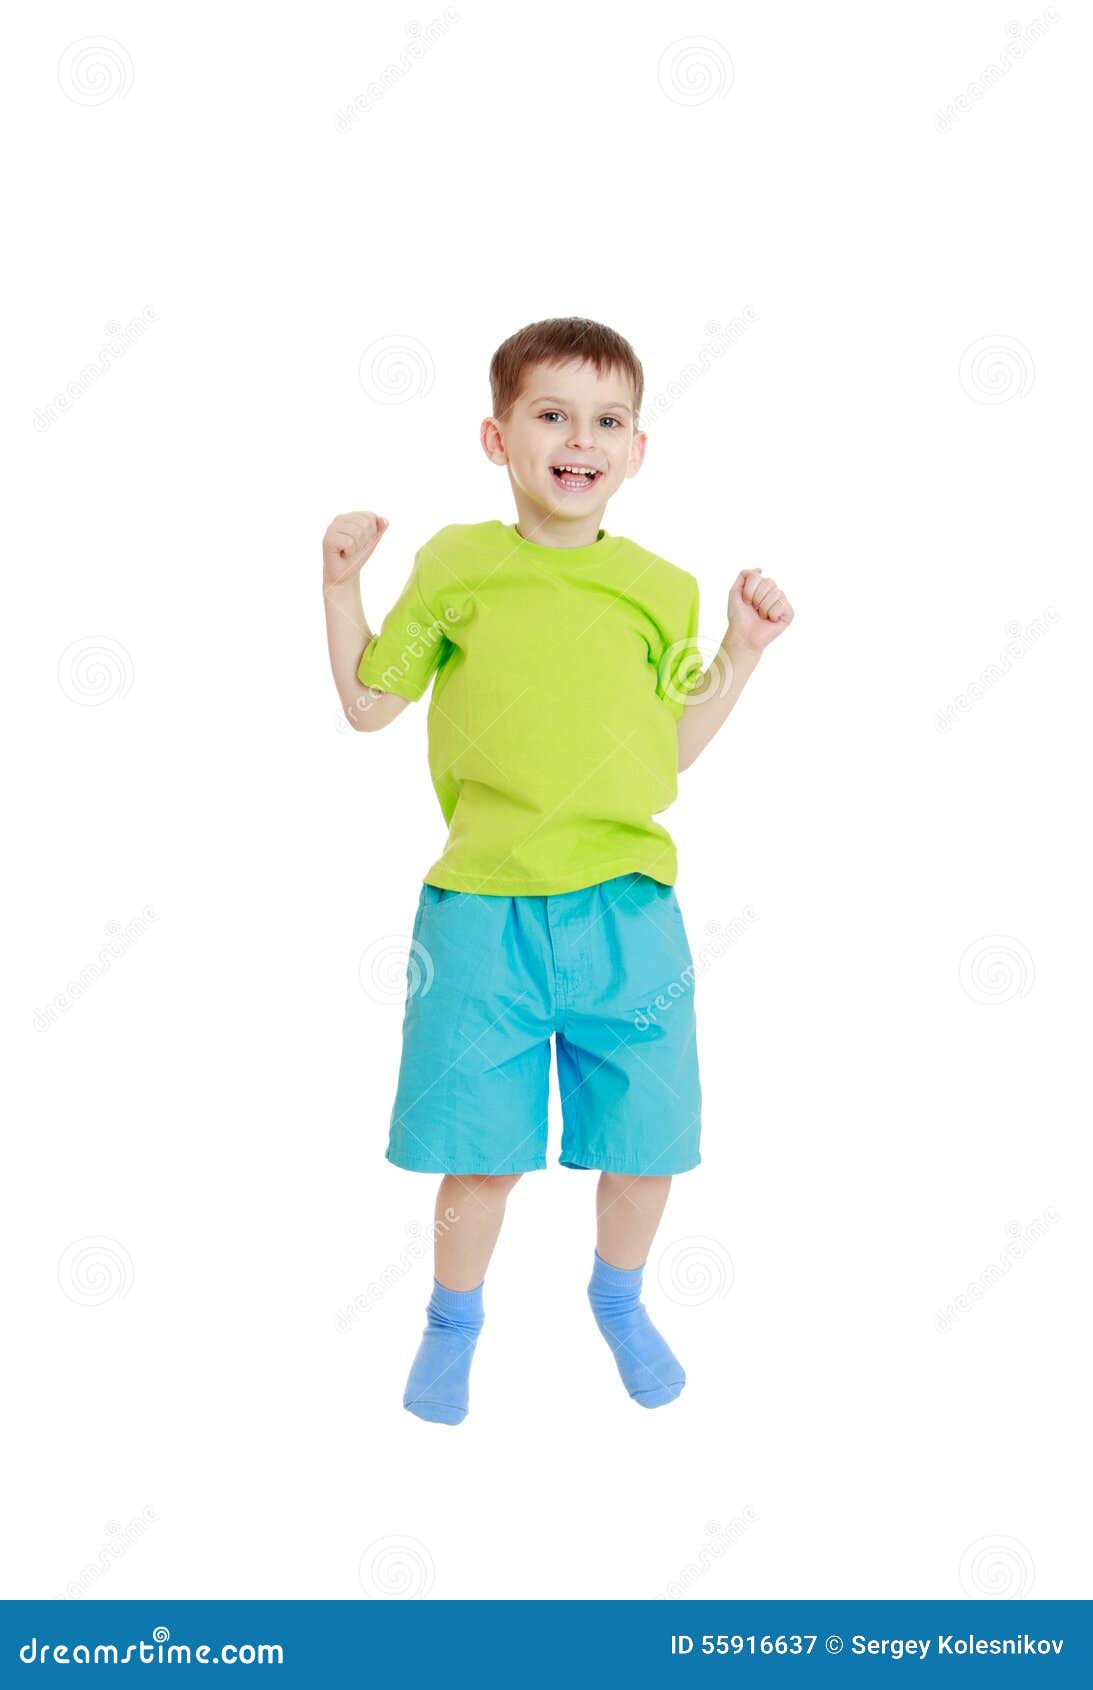 Шорты прыгать. Мальчик в шортах прыгает. Мальчик в шортах и футболке на белом фоне. Мальчик в носках прыгает. Маленький мальчик 6 лет в футболке и шортах.